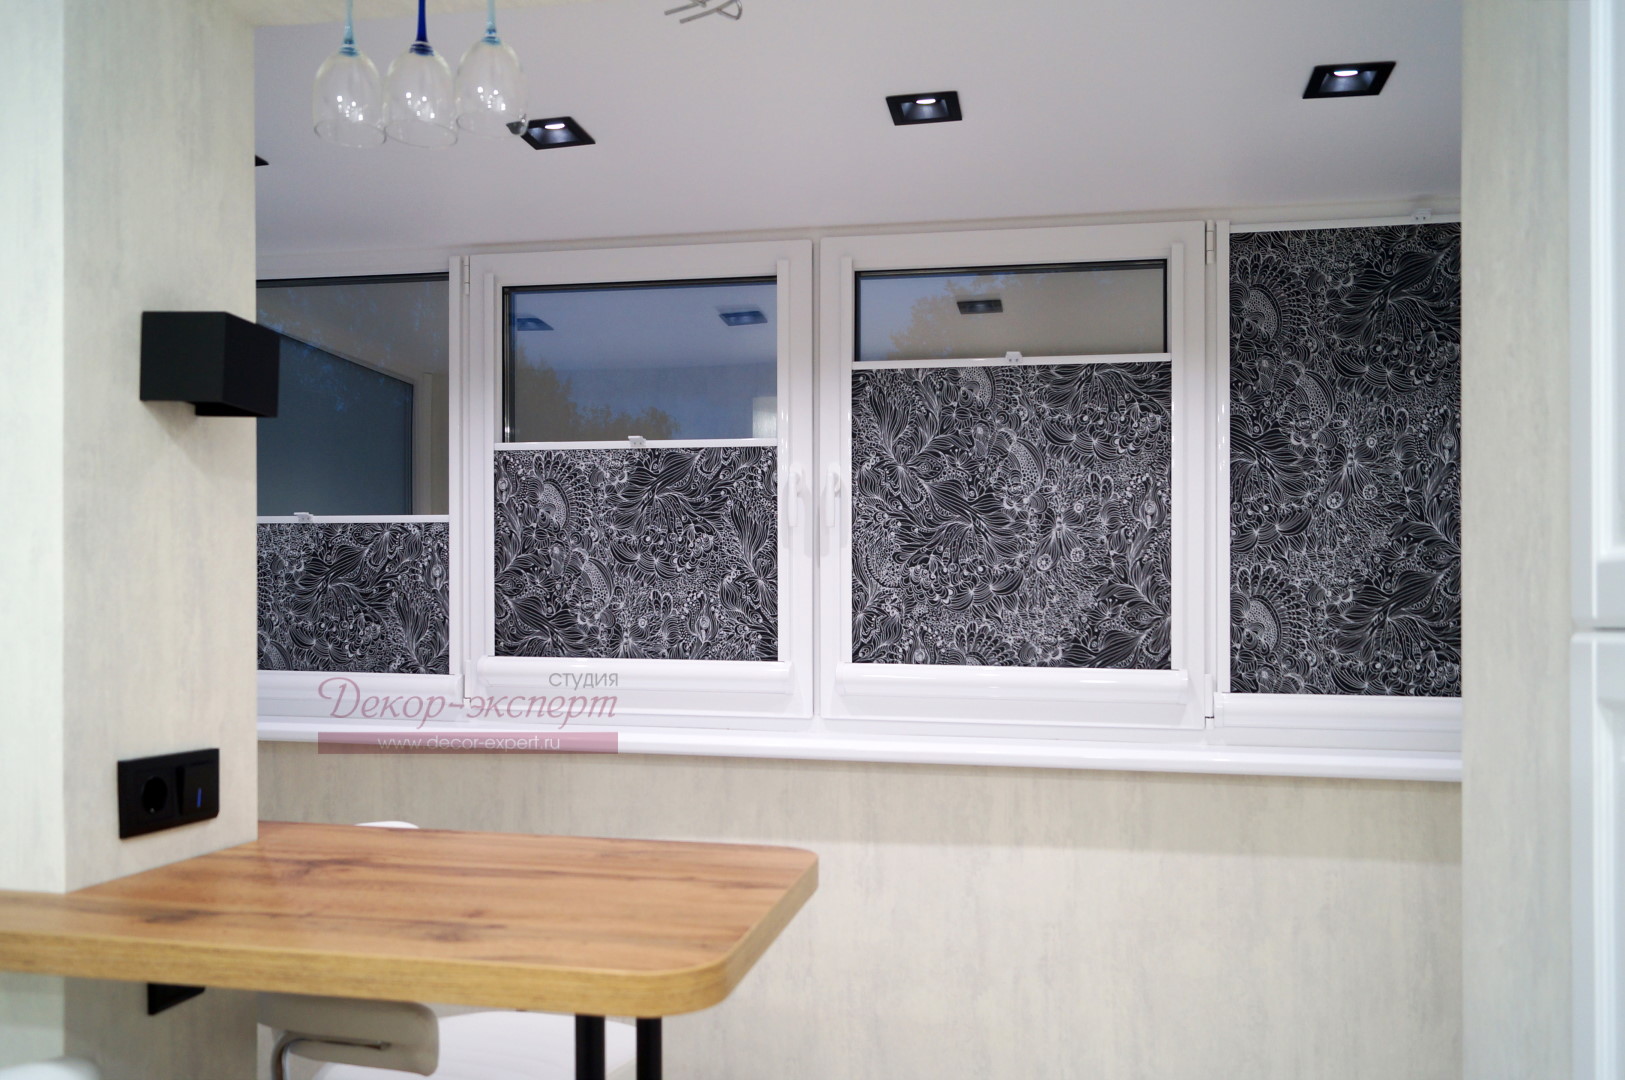 Фрагмент интерьера кухни с рулонными шторами на окне.